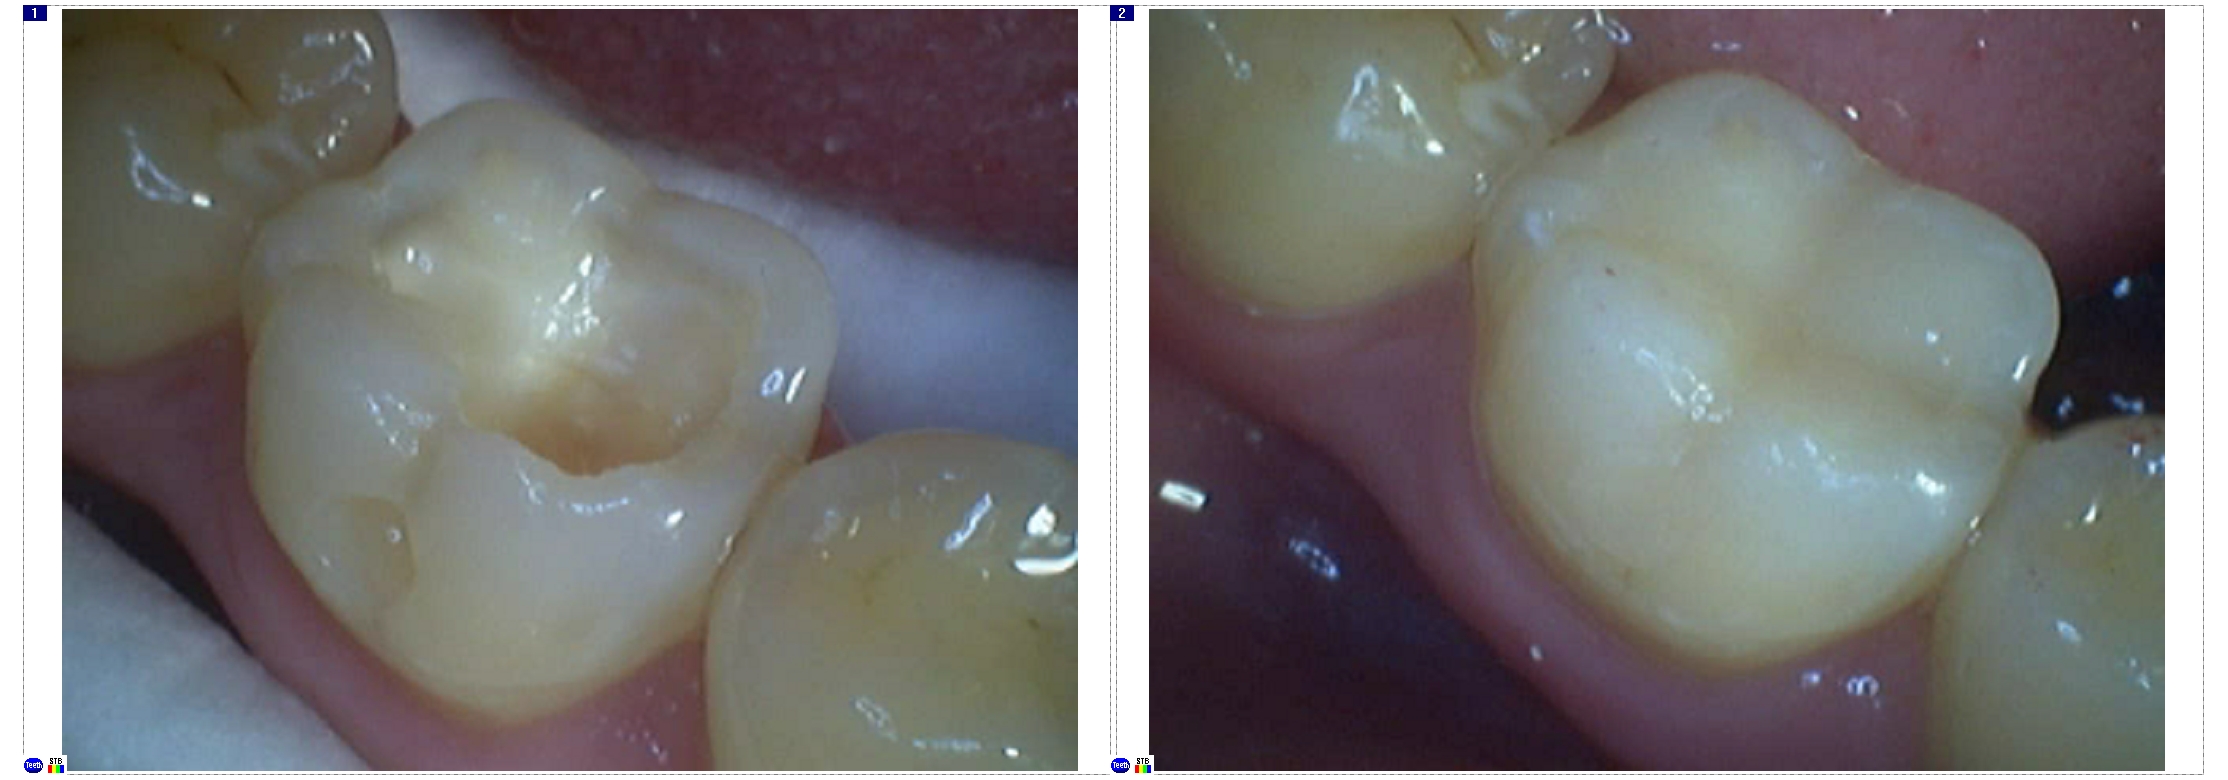 Реставрационная стоматология и виды восстановления зубов - Вестник Кипра